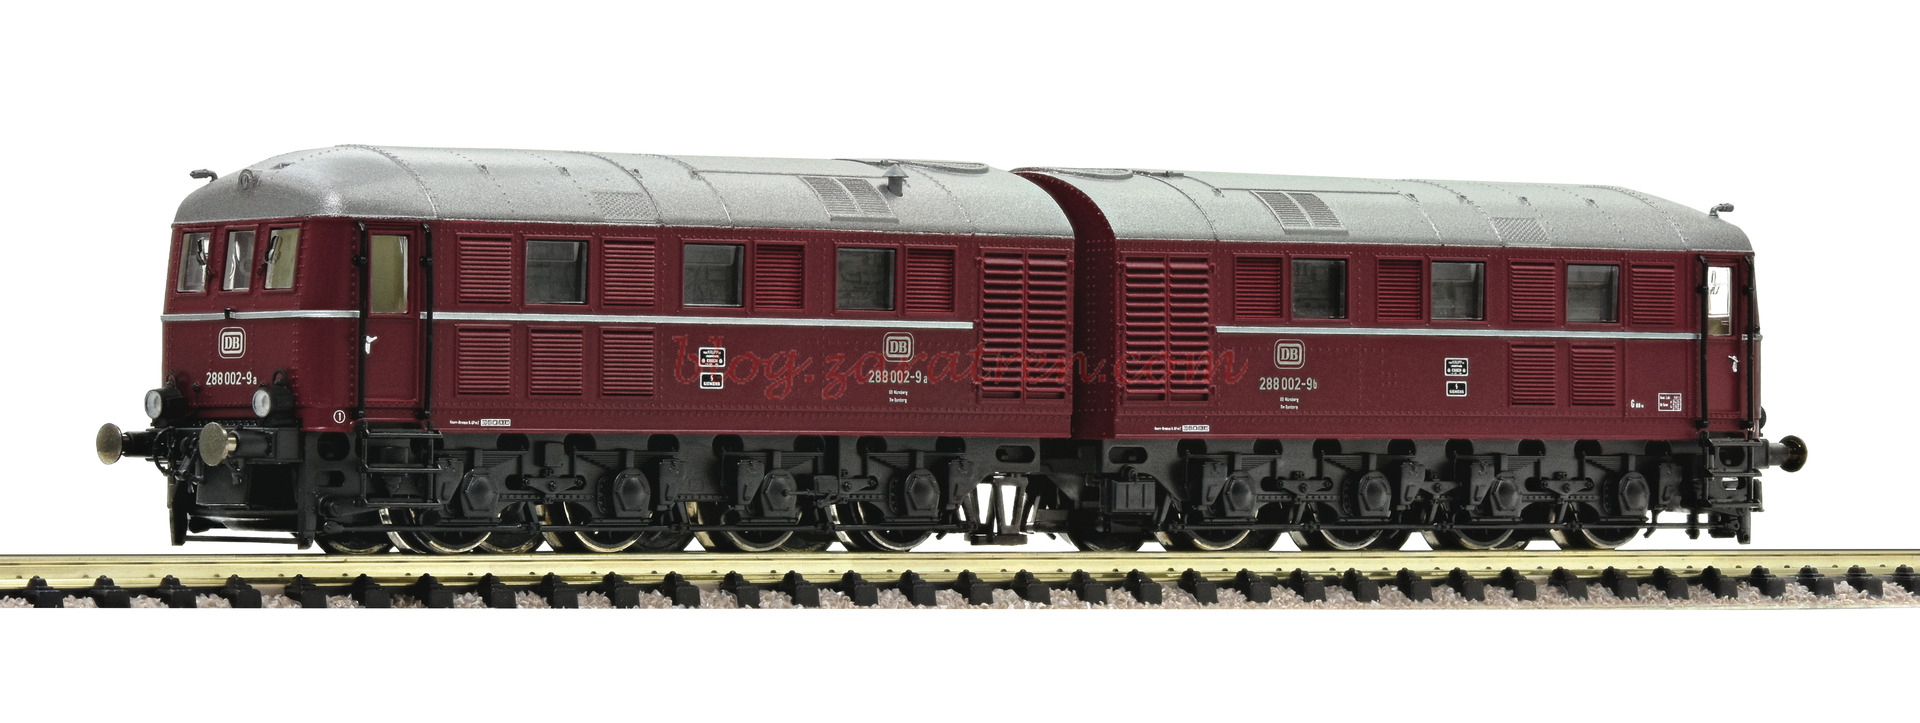 Fleischmann – Locomotora diesel 288 002-9, DB, Analogica, Epoca IV, Escala N, Ref: 725100.